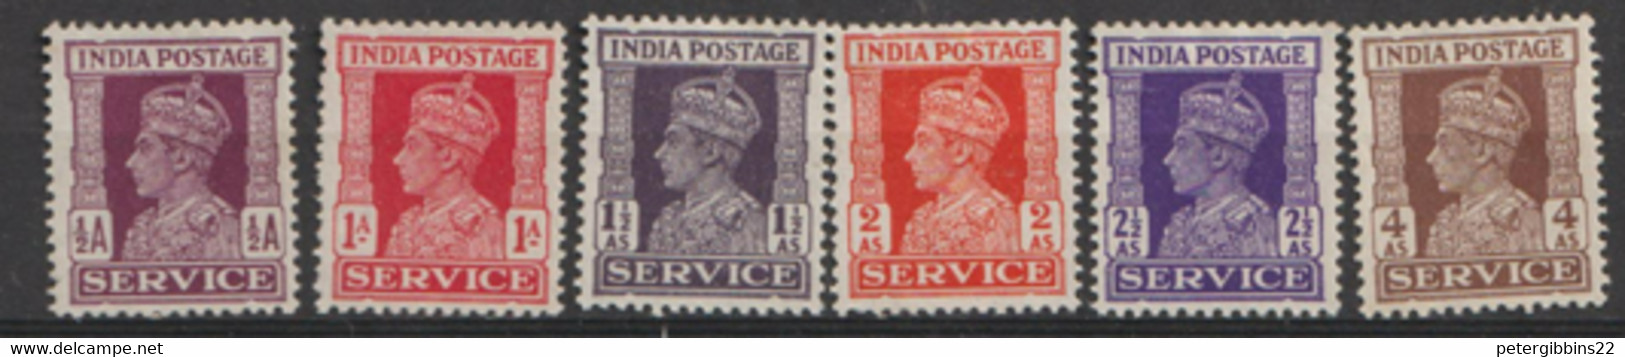 India  1959  Serviice  Various Values   Mounted Mint - Ongebruikt